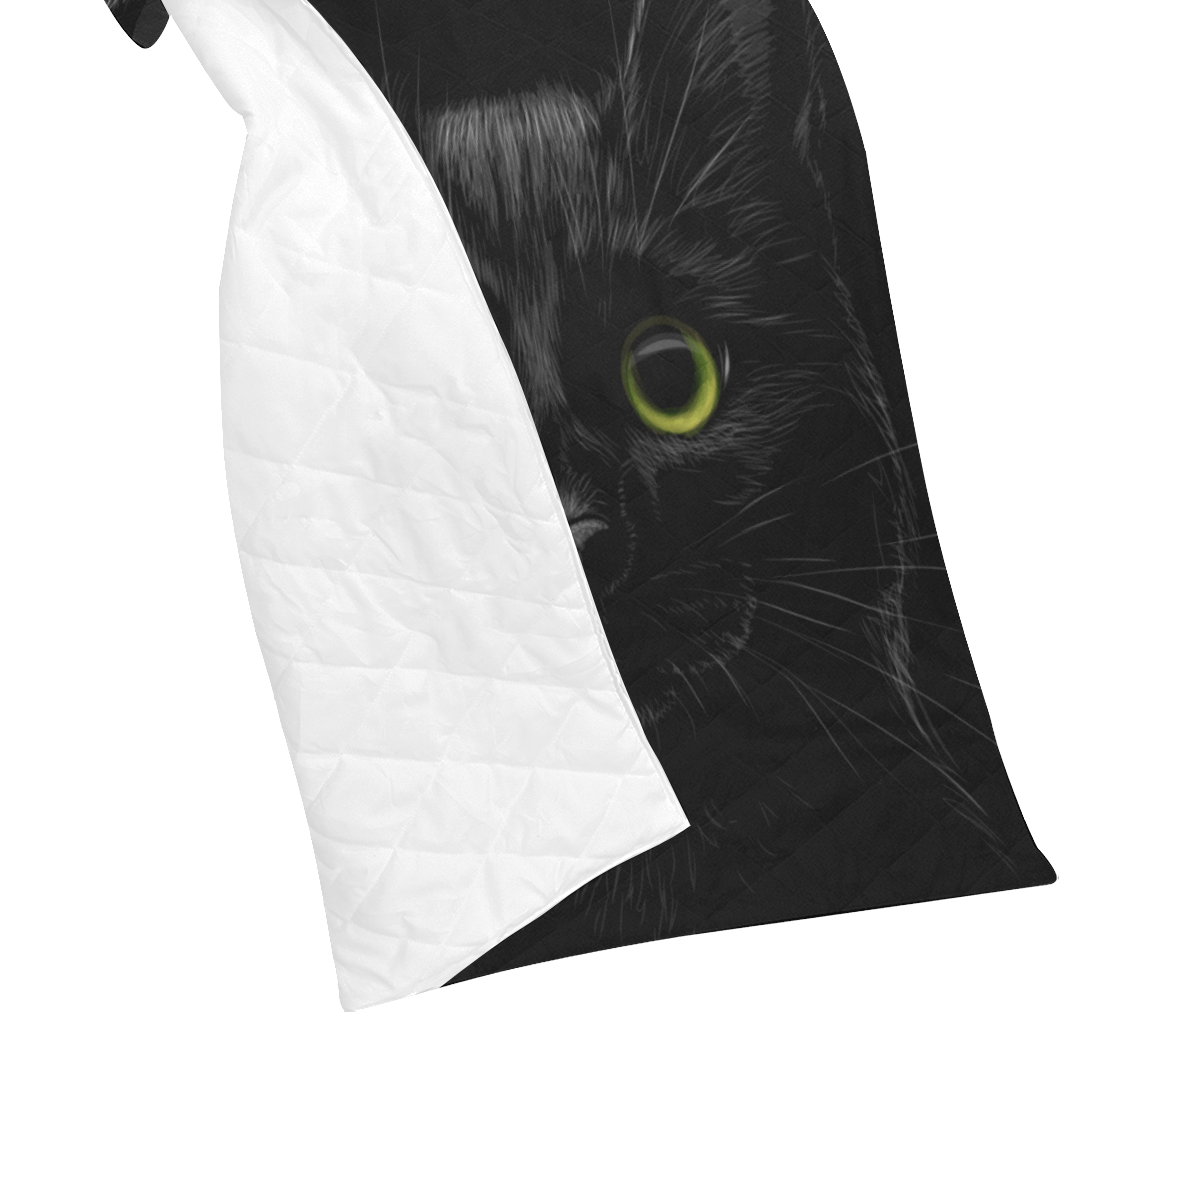 Black Cat Quilt 40"x50"